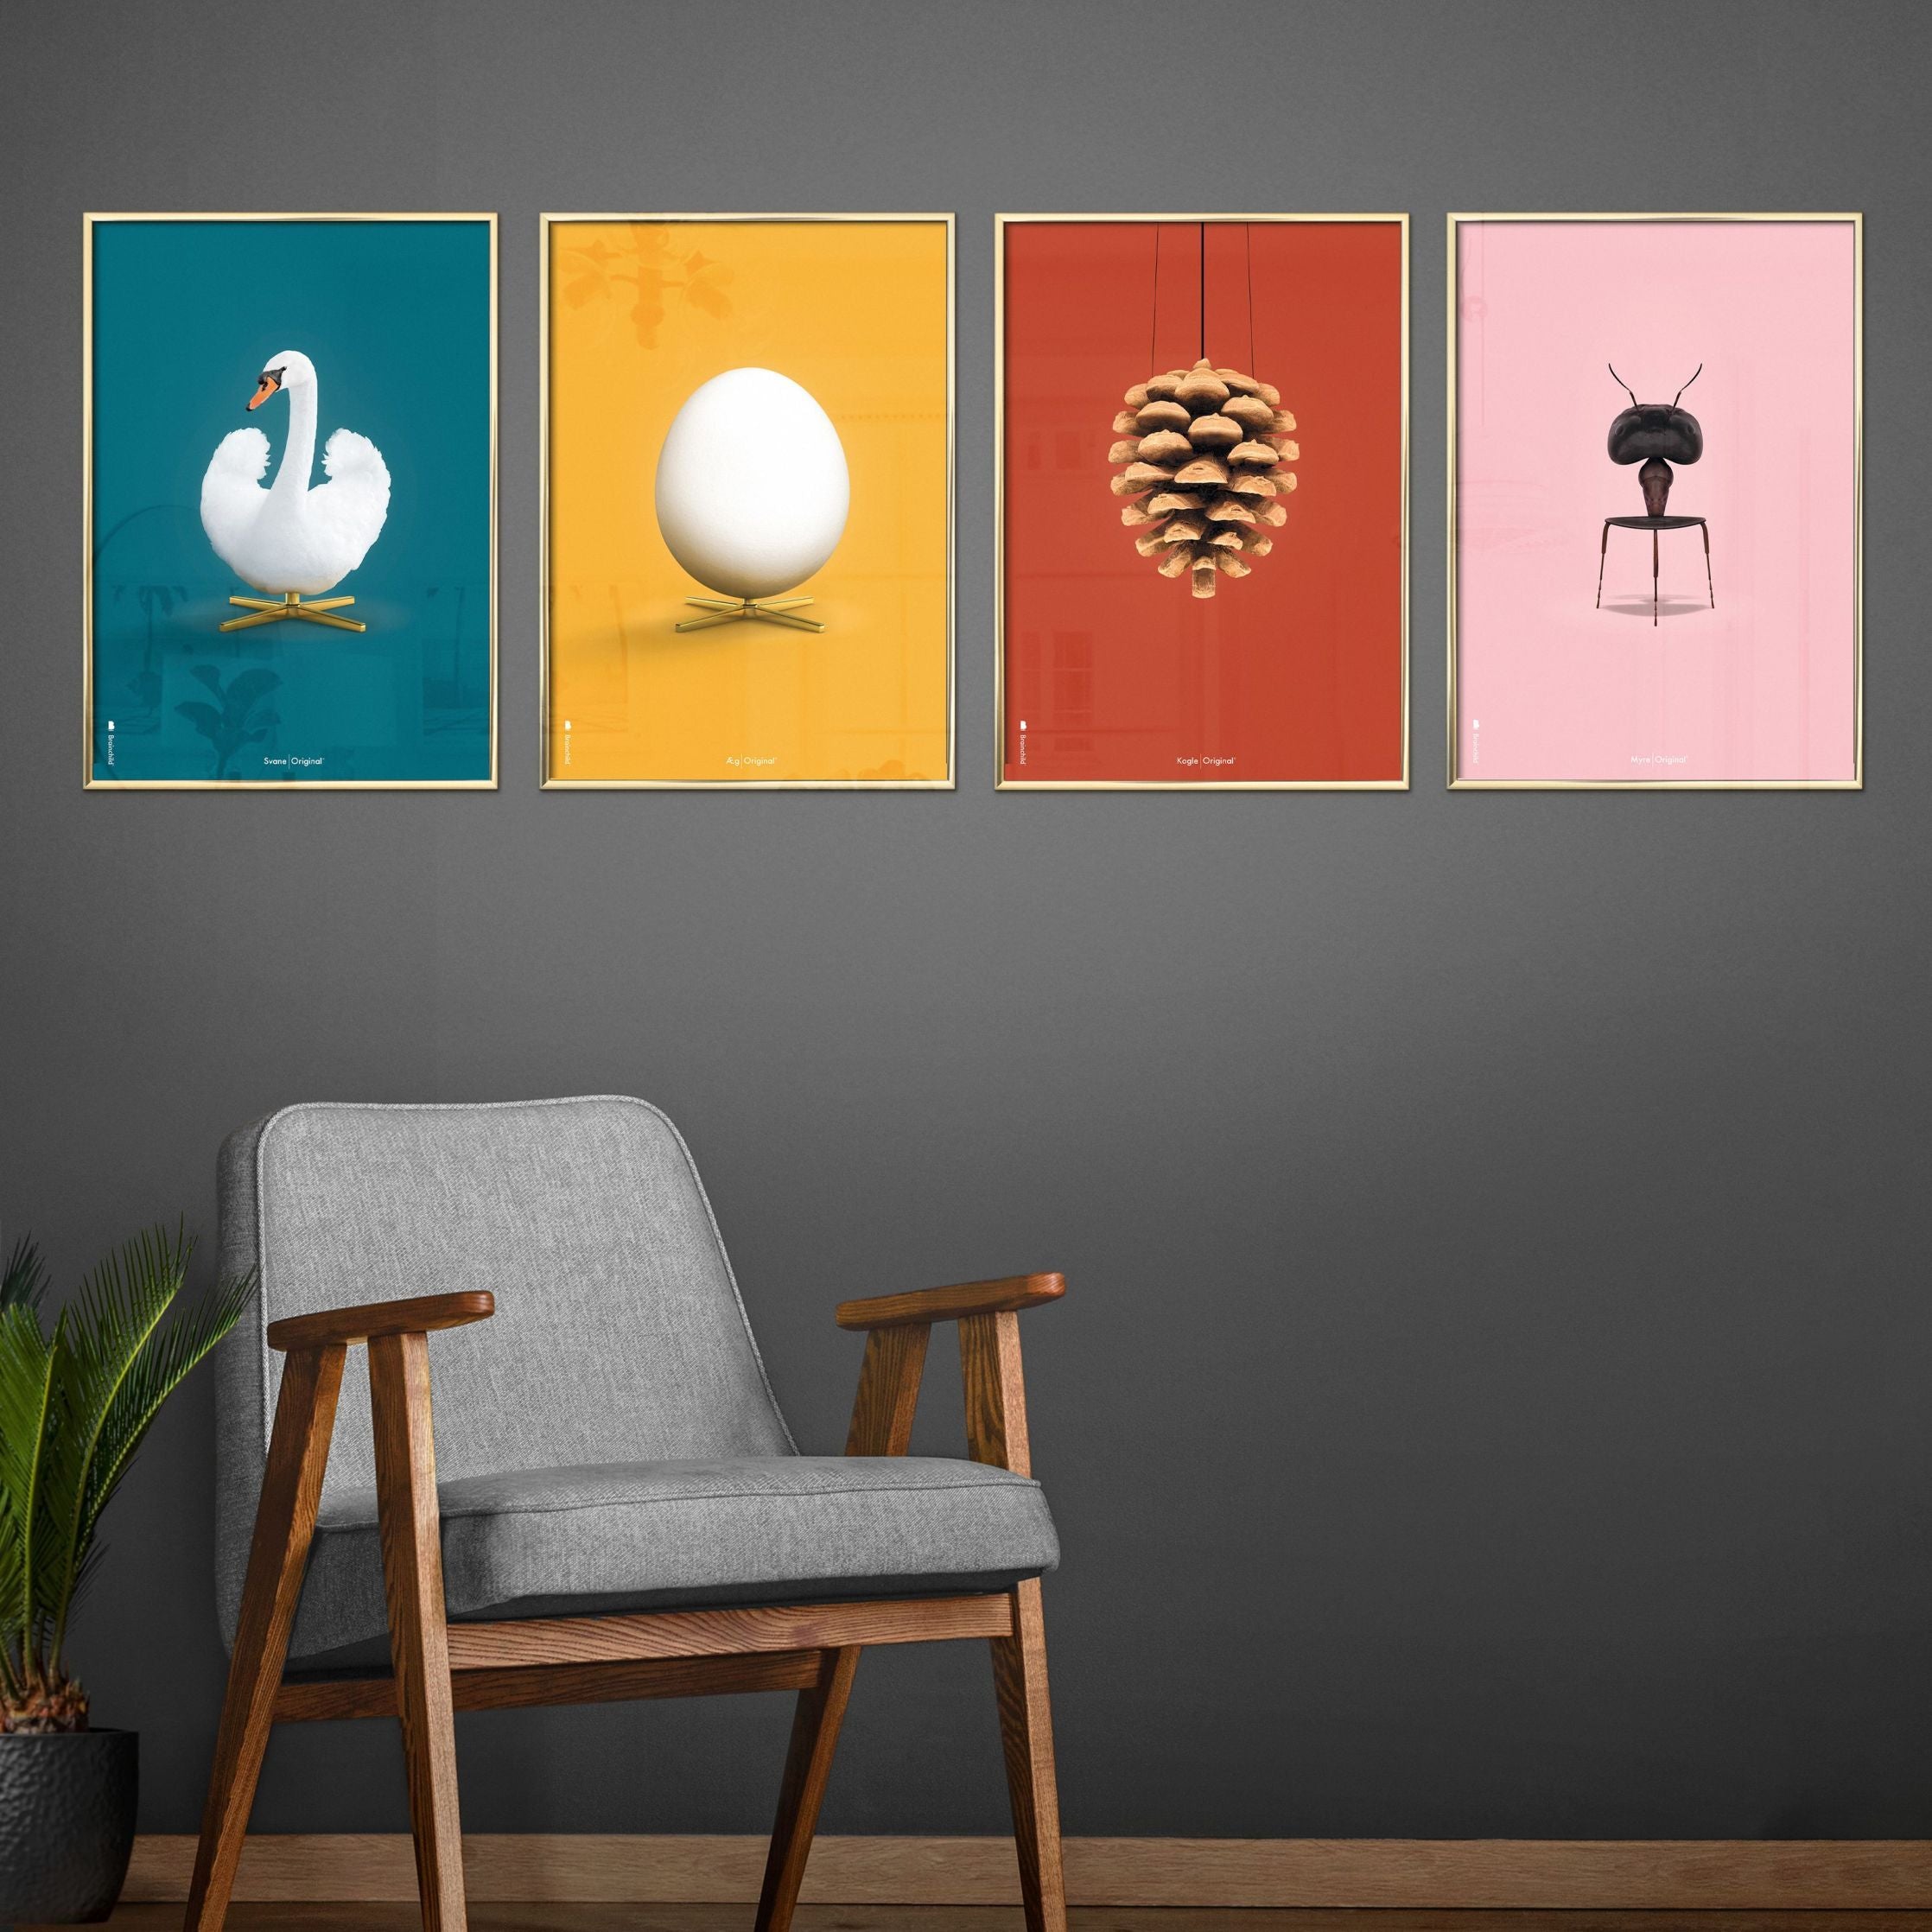 Pomysły Swan Classic Plakat, Light Wood Frame 70 x100 cm, ropopochodne tło